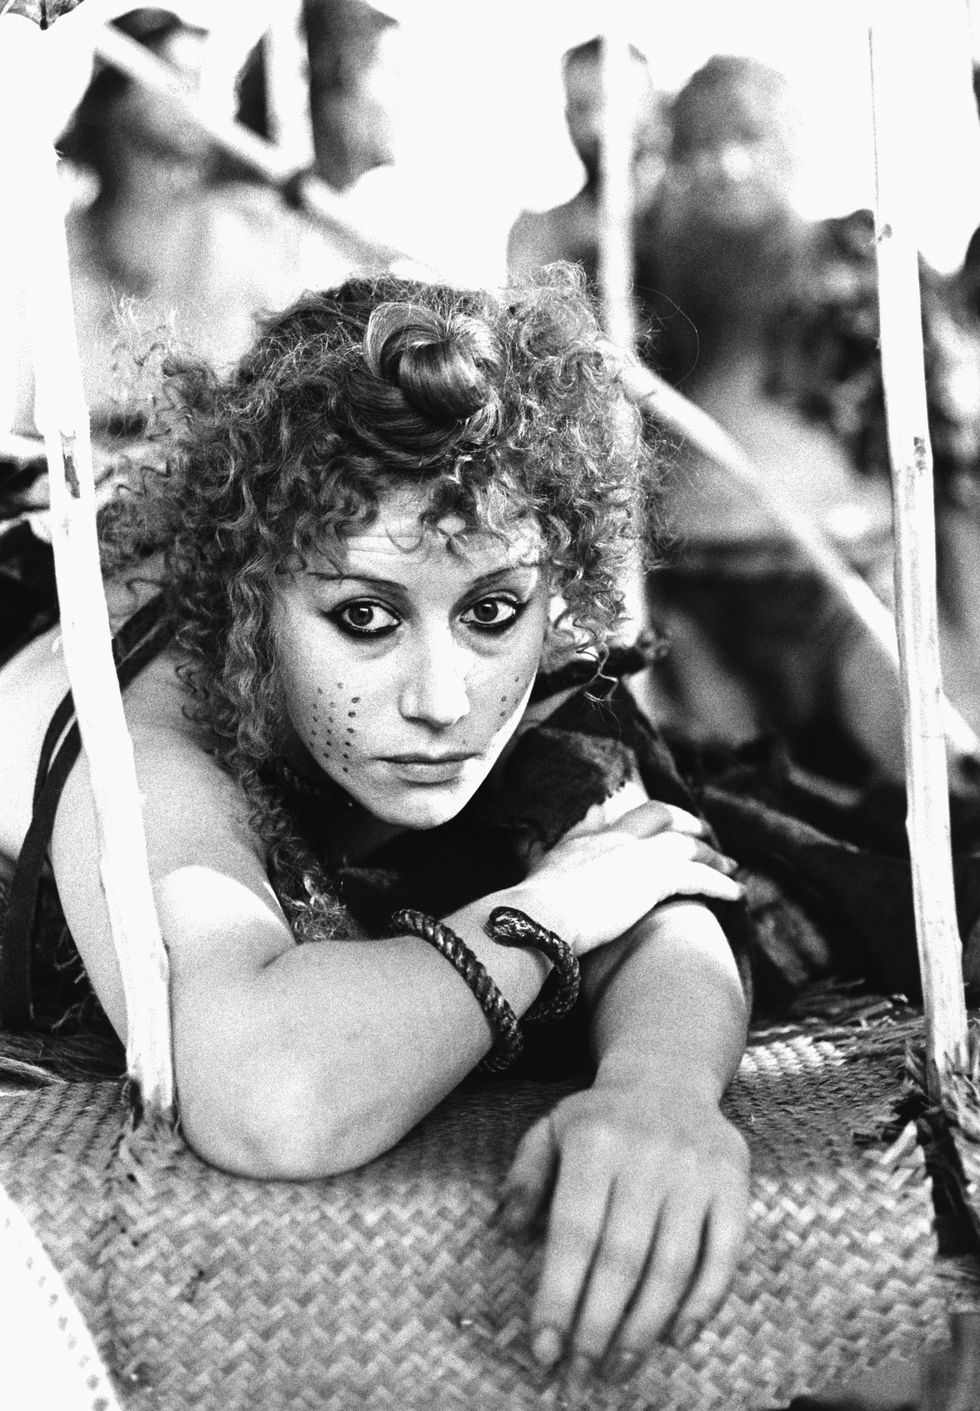 actress helen mirren as cassandra, 1981